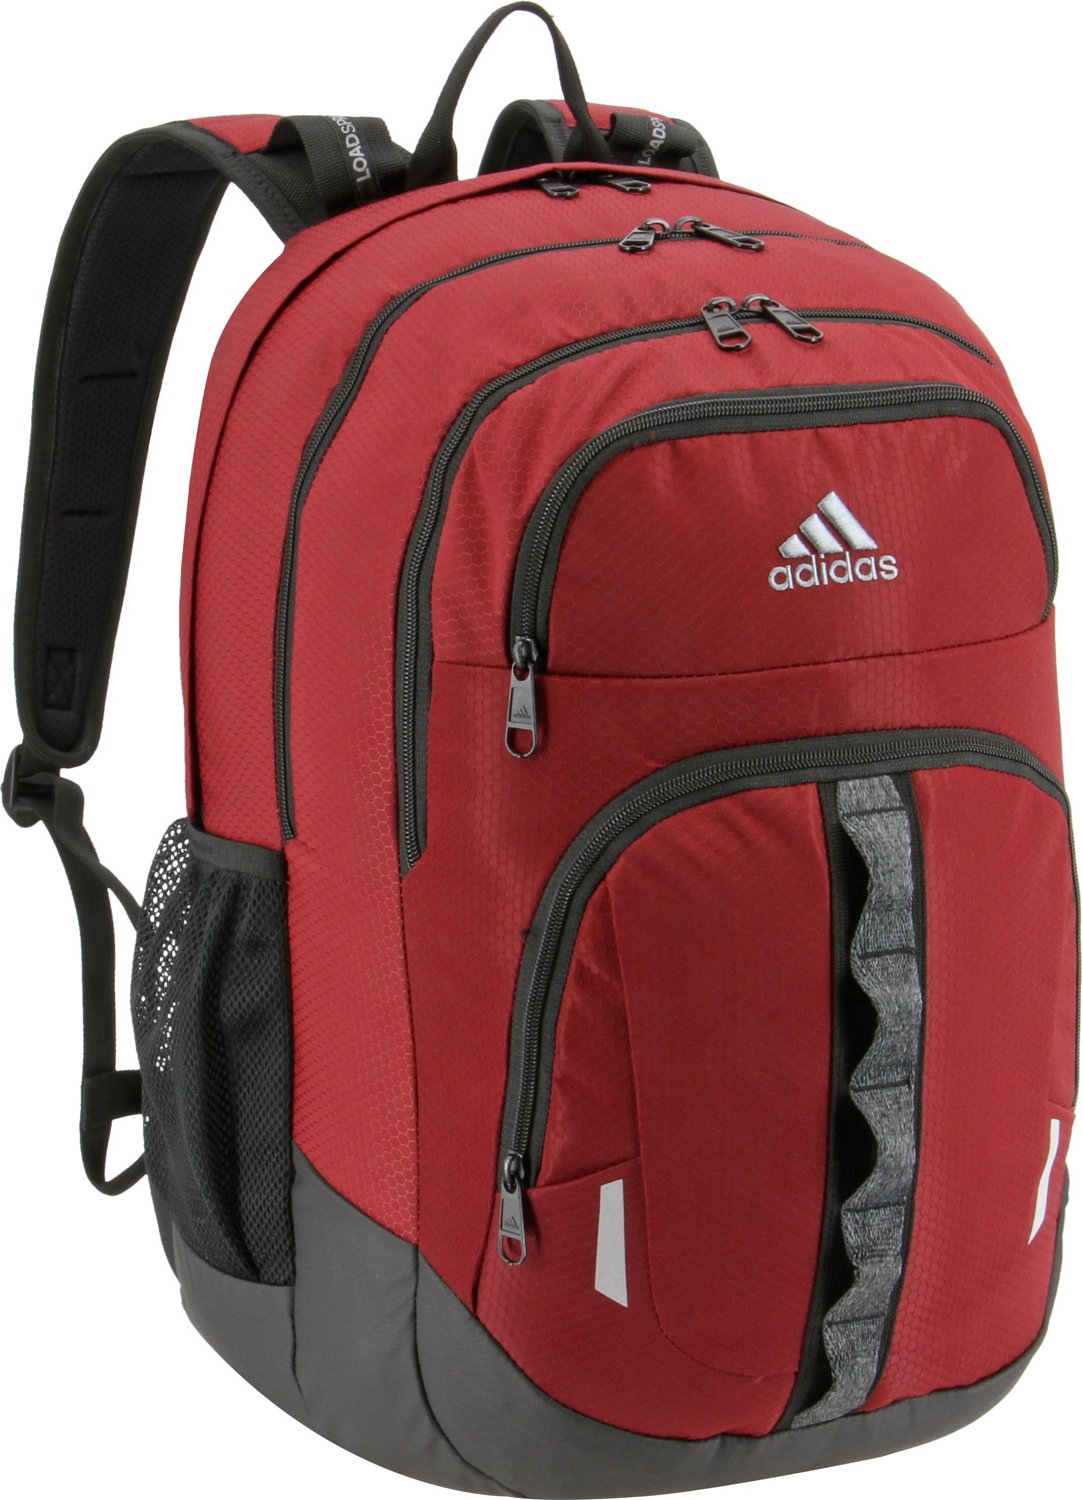 Adidas Prime II Backpack Red Dark/Black 